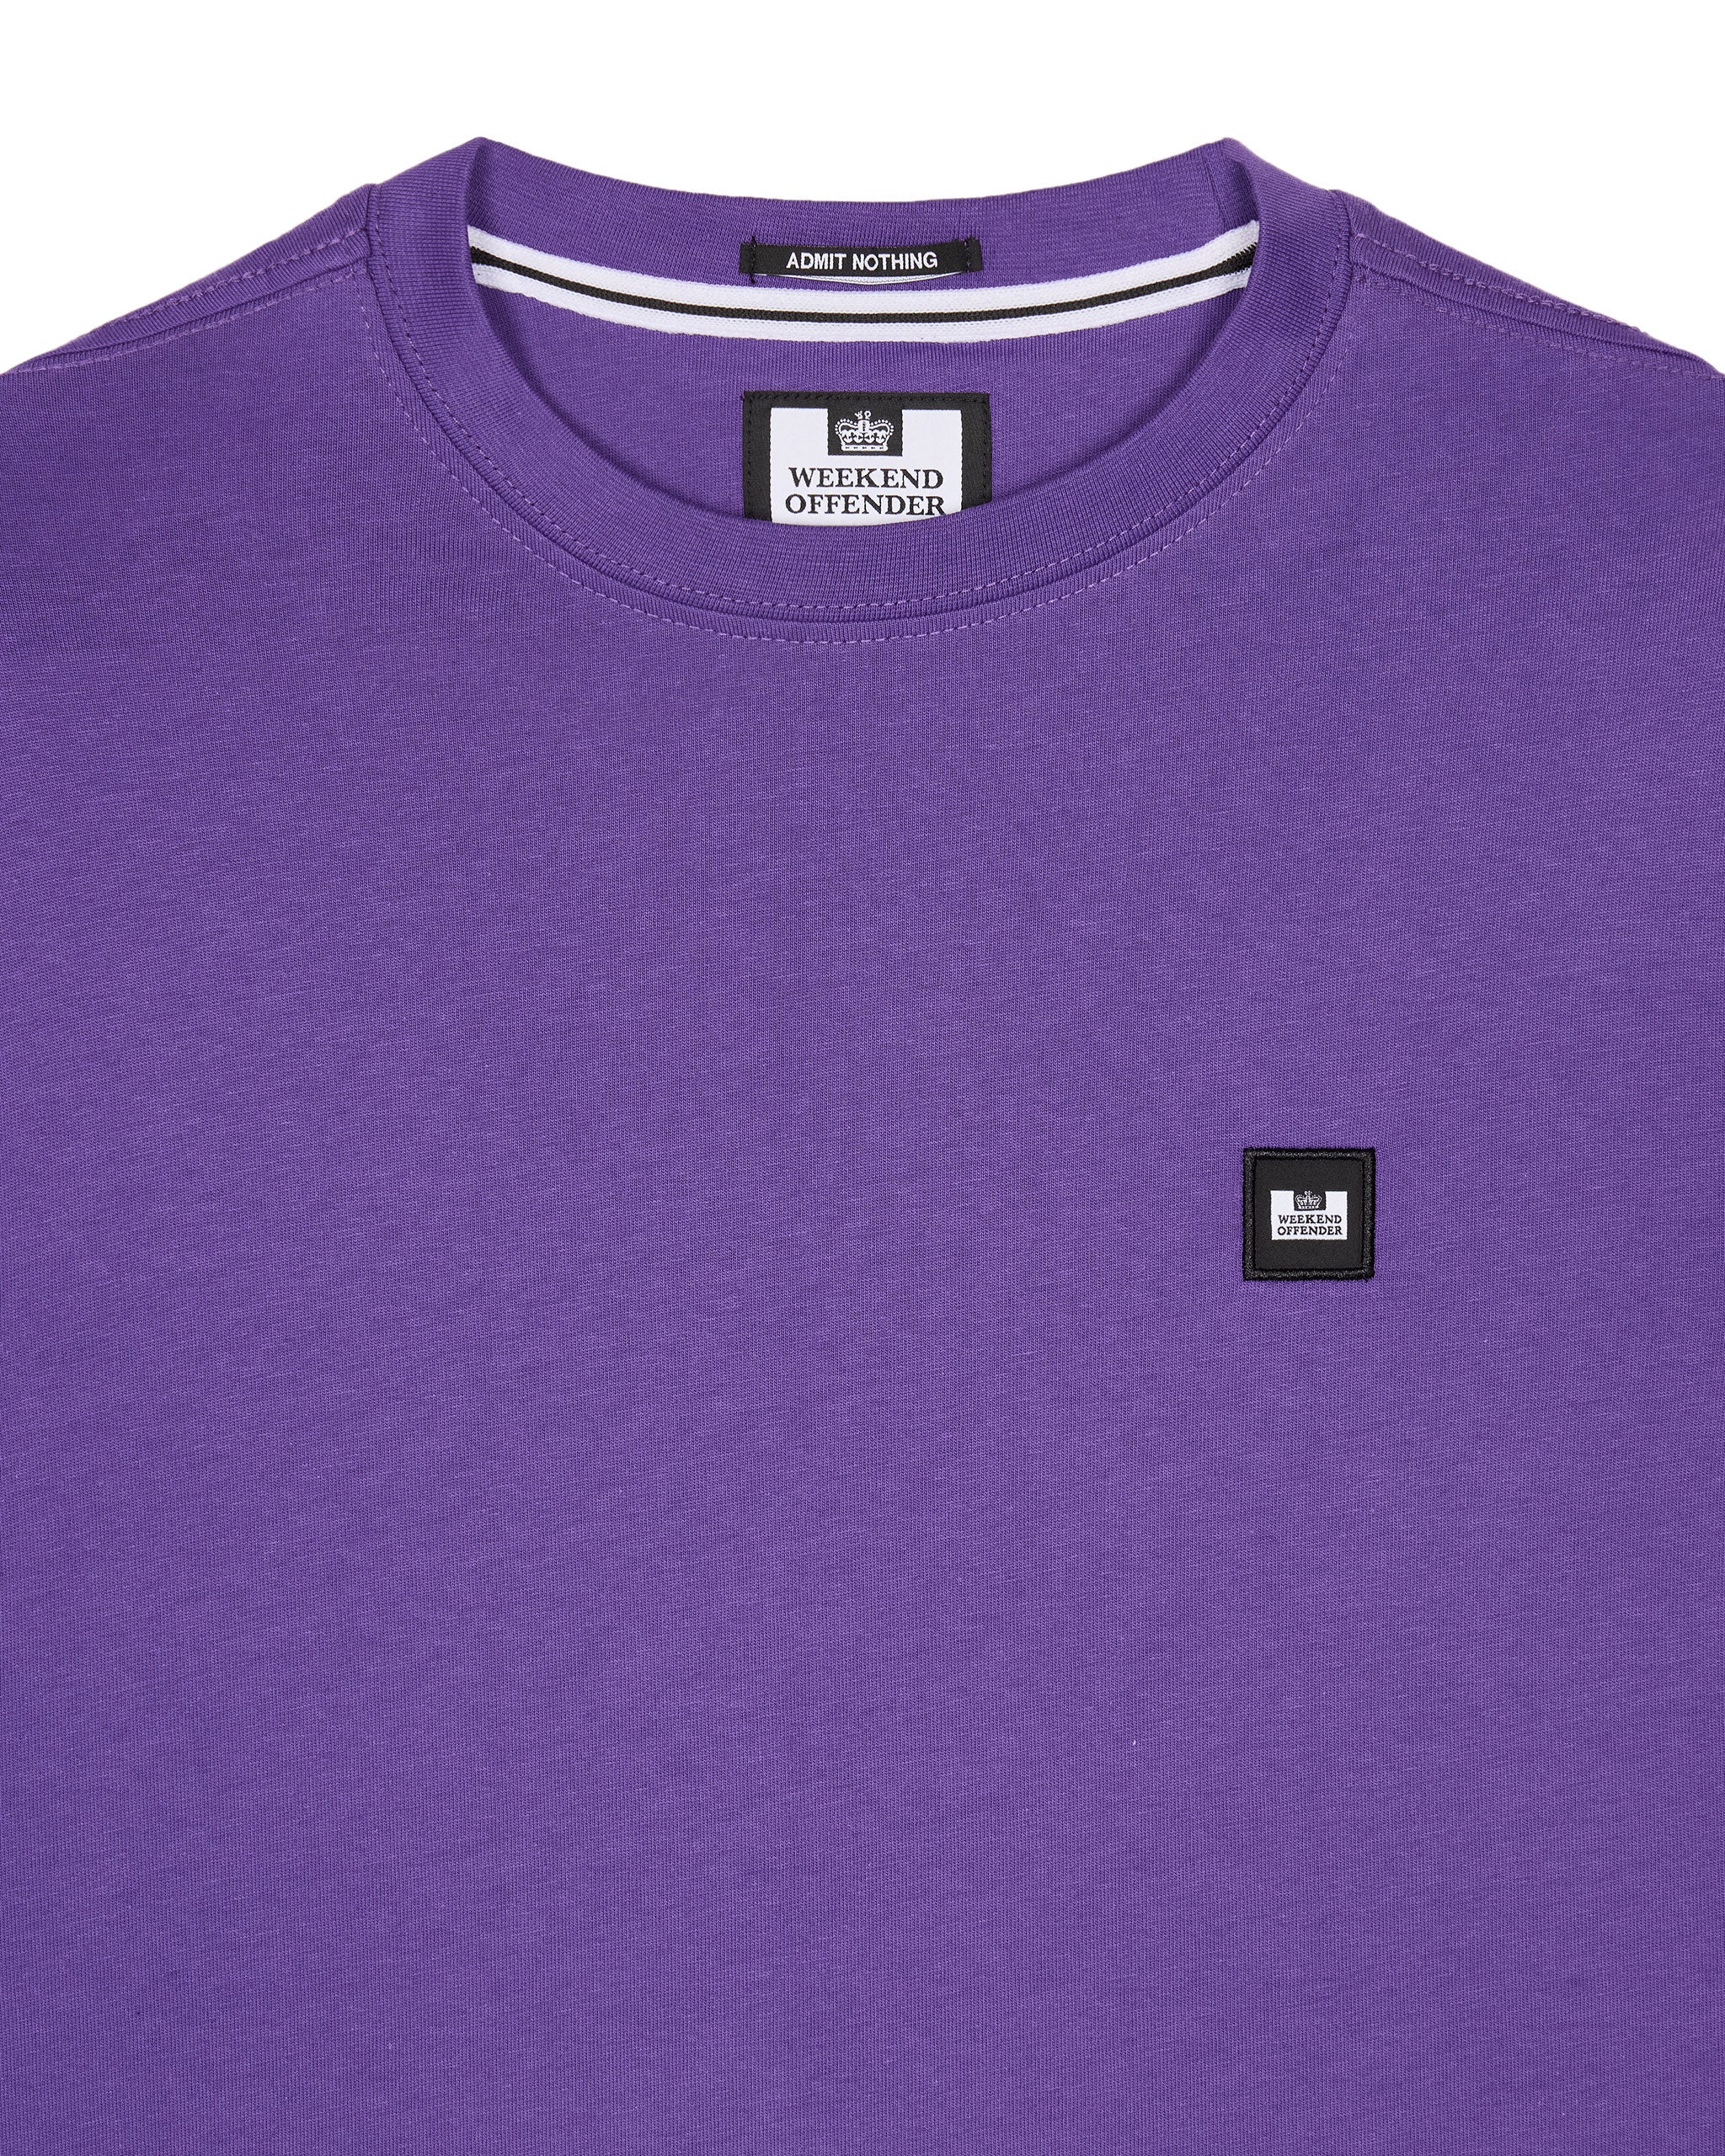 Cannon Beach T-Shirt Allium Purple